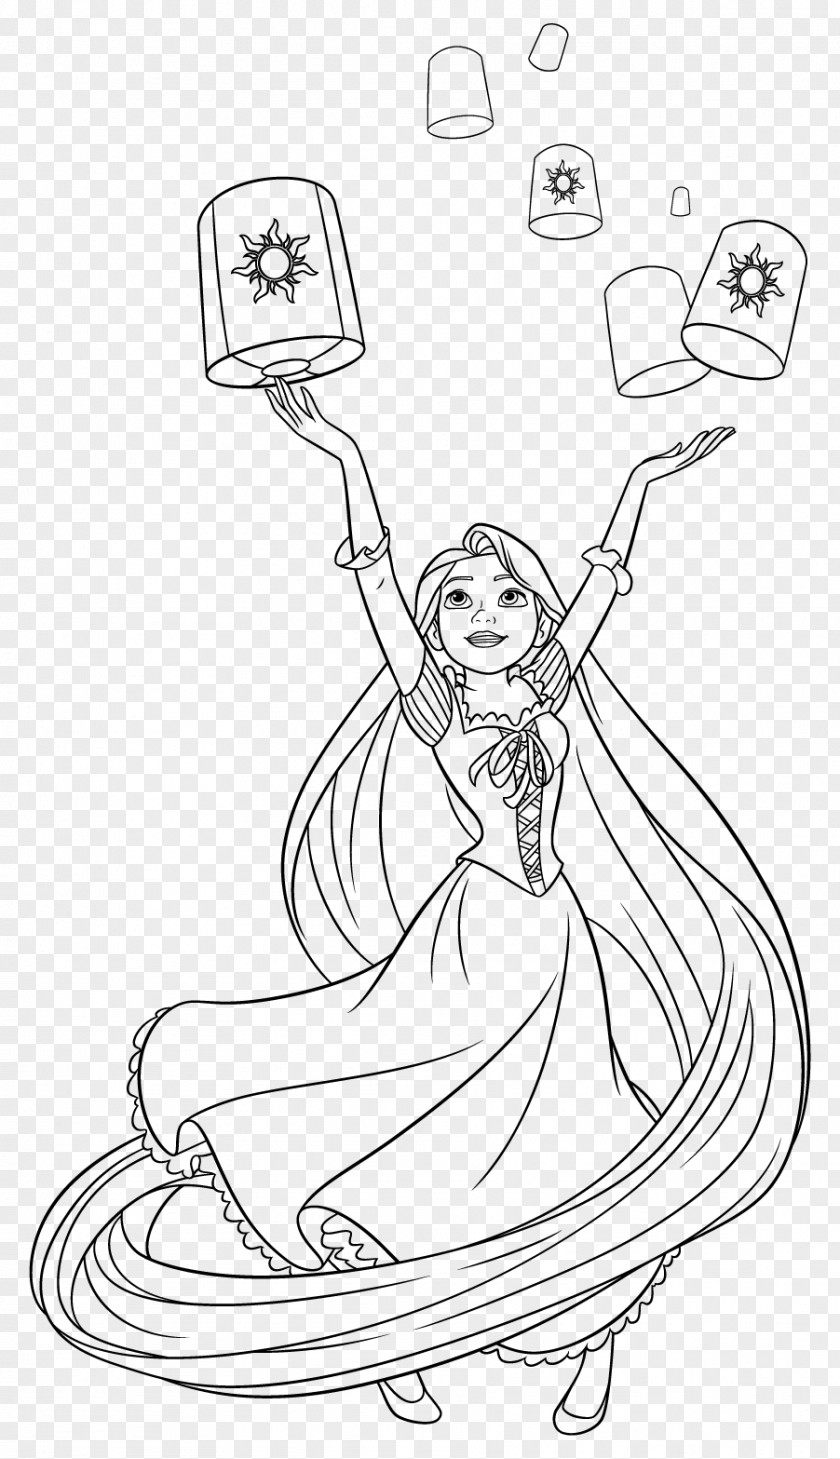 Disney Princess Rapunzel Coloring Book Drawing Tiana PNG